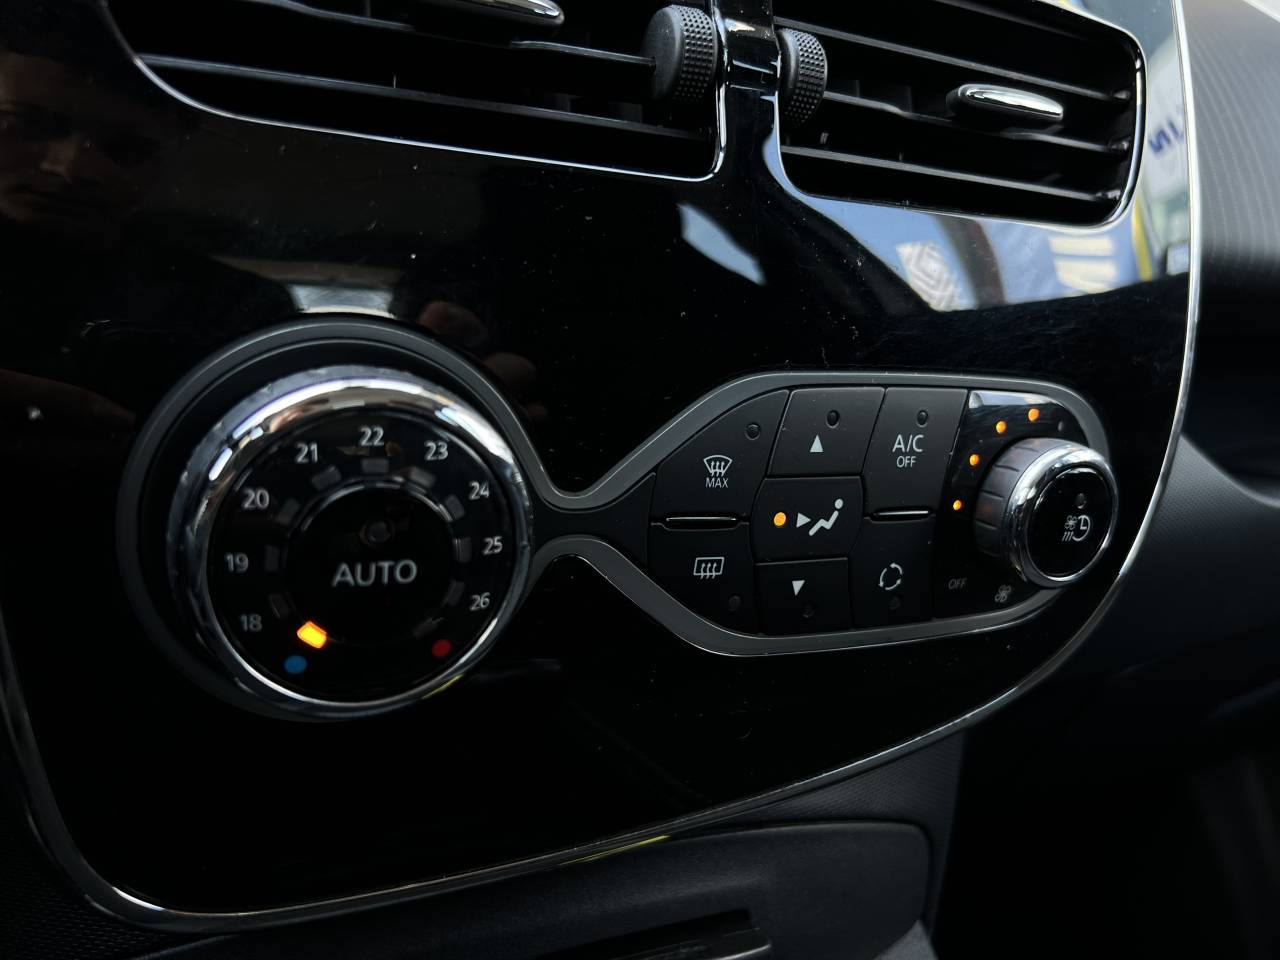 Renault ZOE Intens R90 Achat Integral (Pas de Location de Batterie) groupe Vergnon